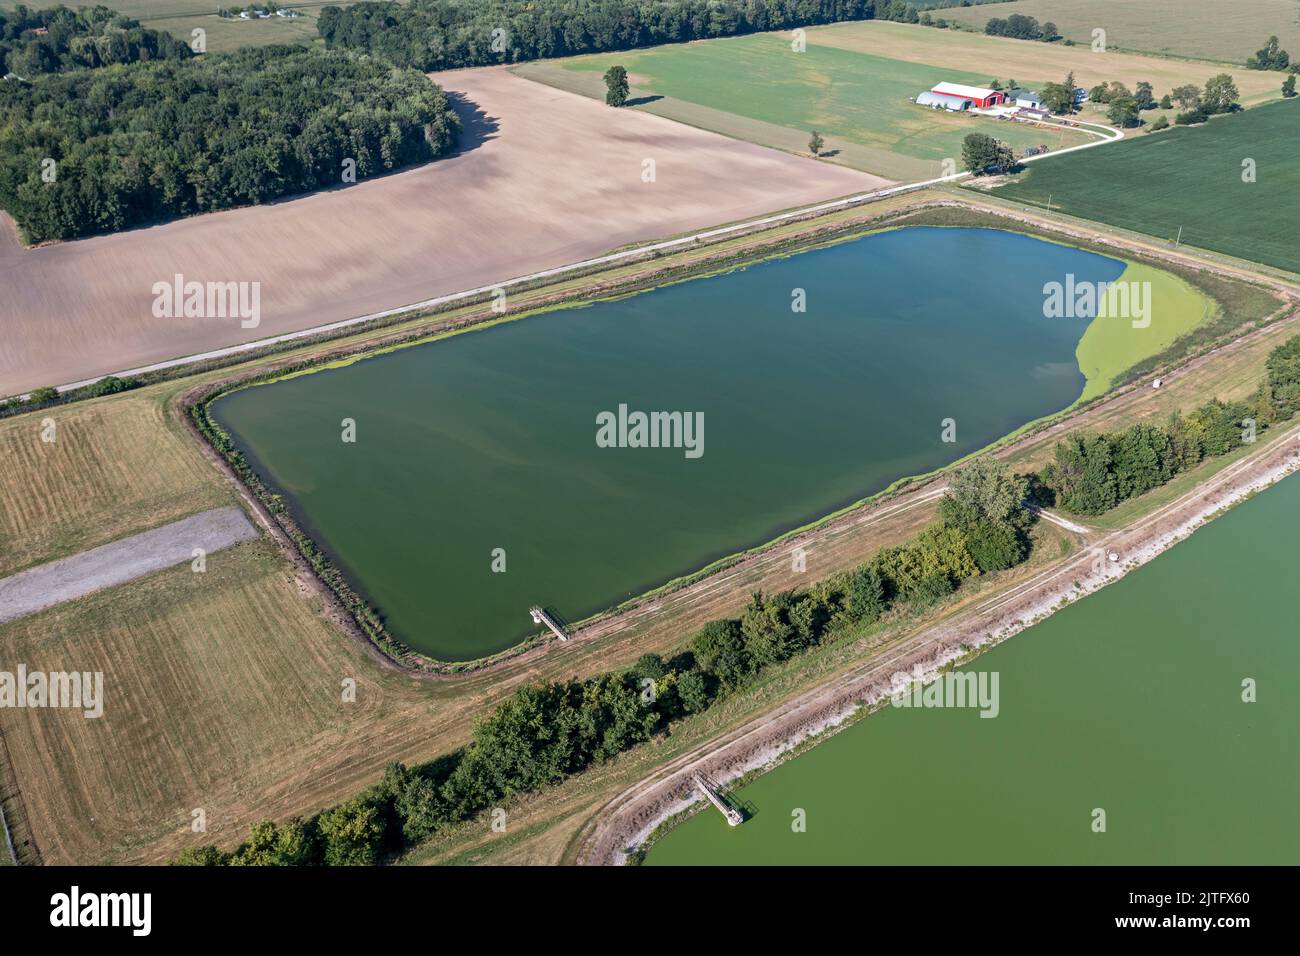 Three Oaks, Michigan - Lagunen zur Stabilisierung von Abwasser für das Dorf Three Oaks. Die Lagunen behandeln Abwasser, da Bakterien mit organischer Matte reagieren Stockfoto